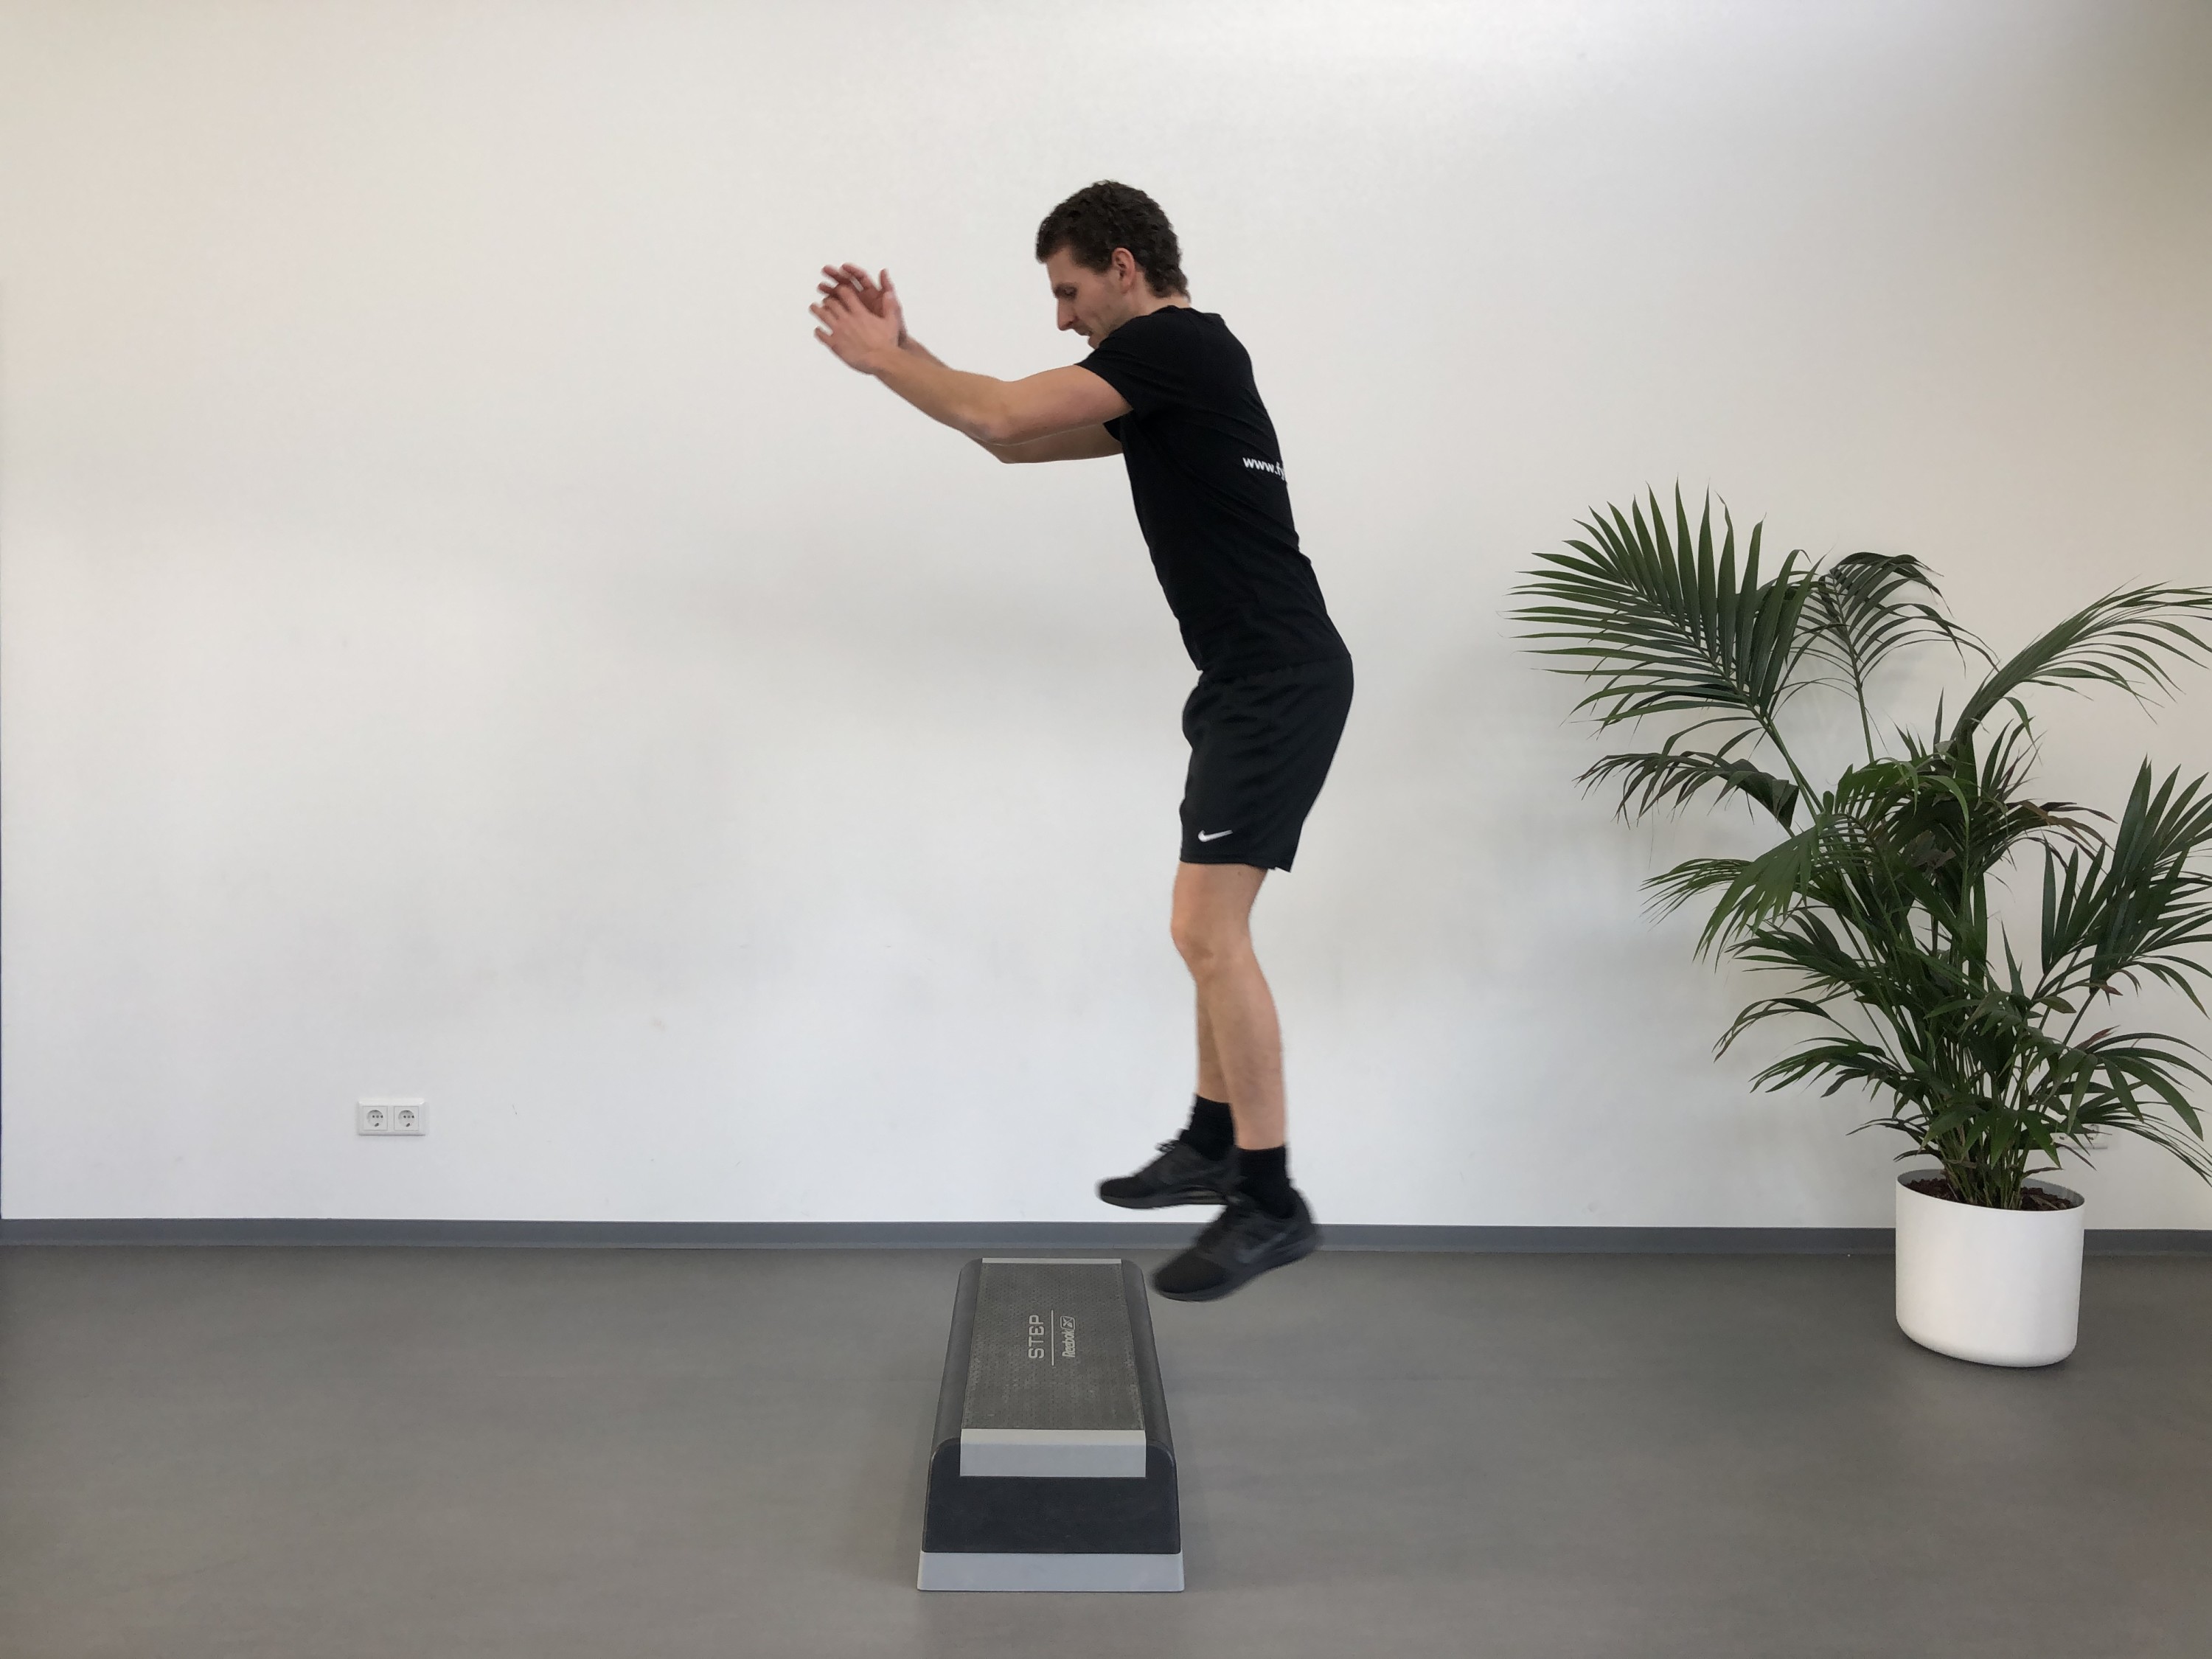 Heup | Staand | Squat jump op step | Fysioefeningen.nl | Breda